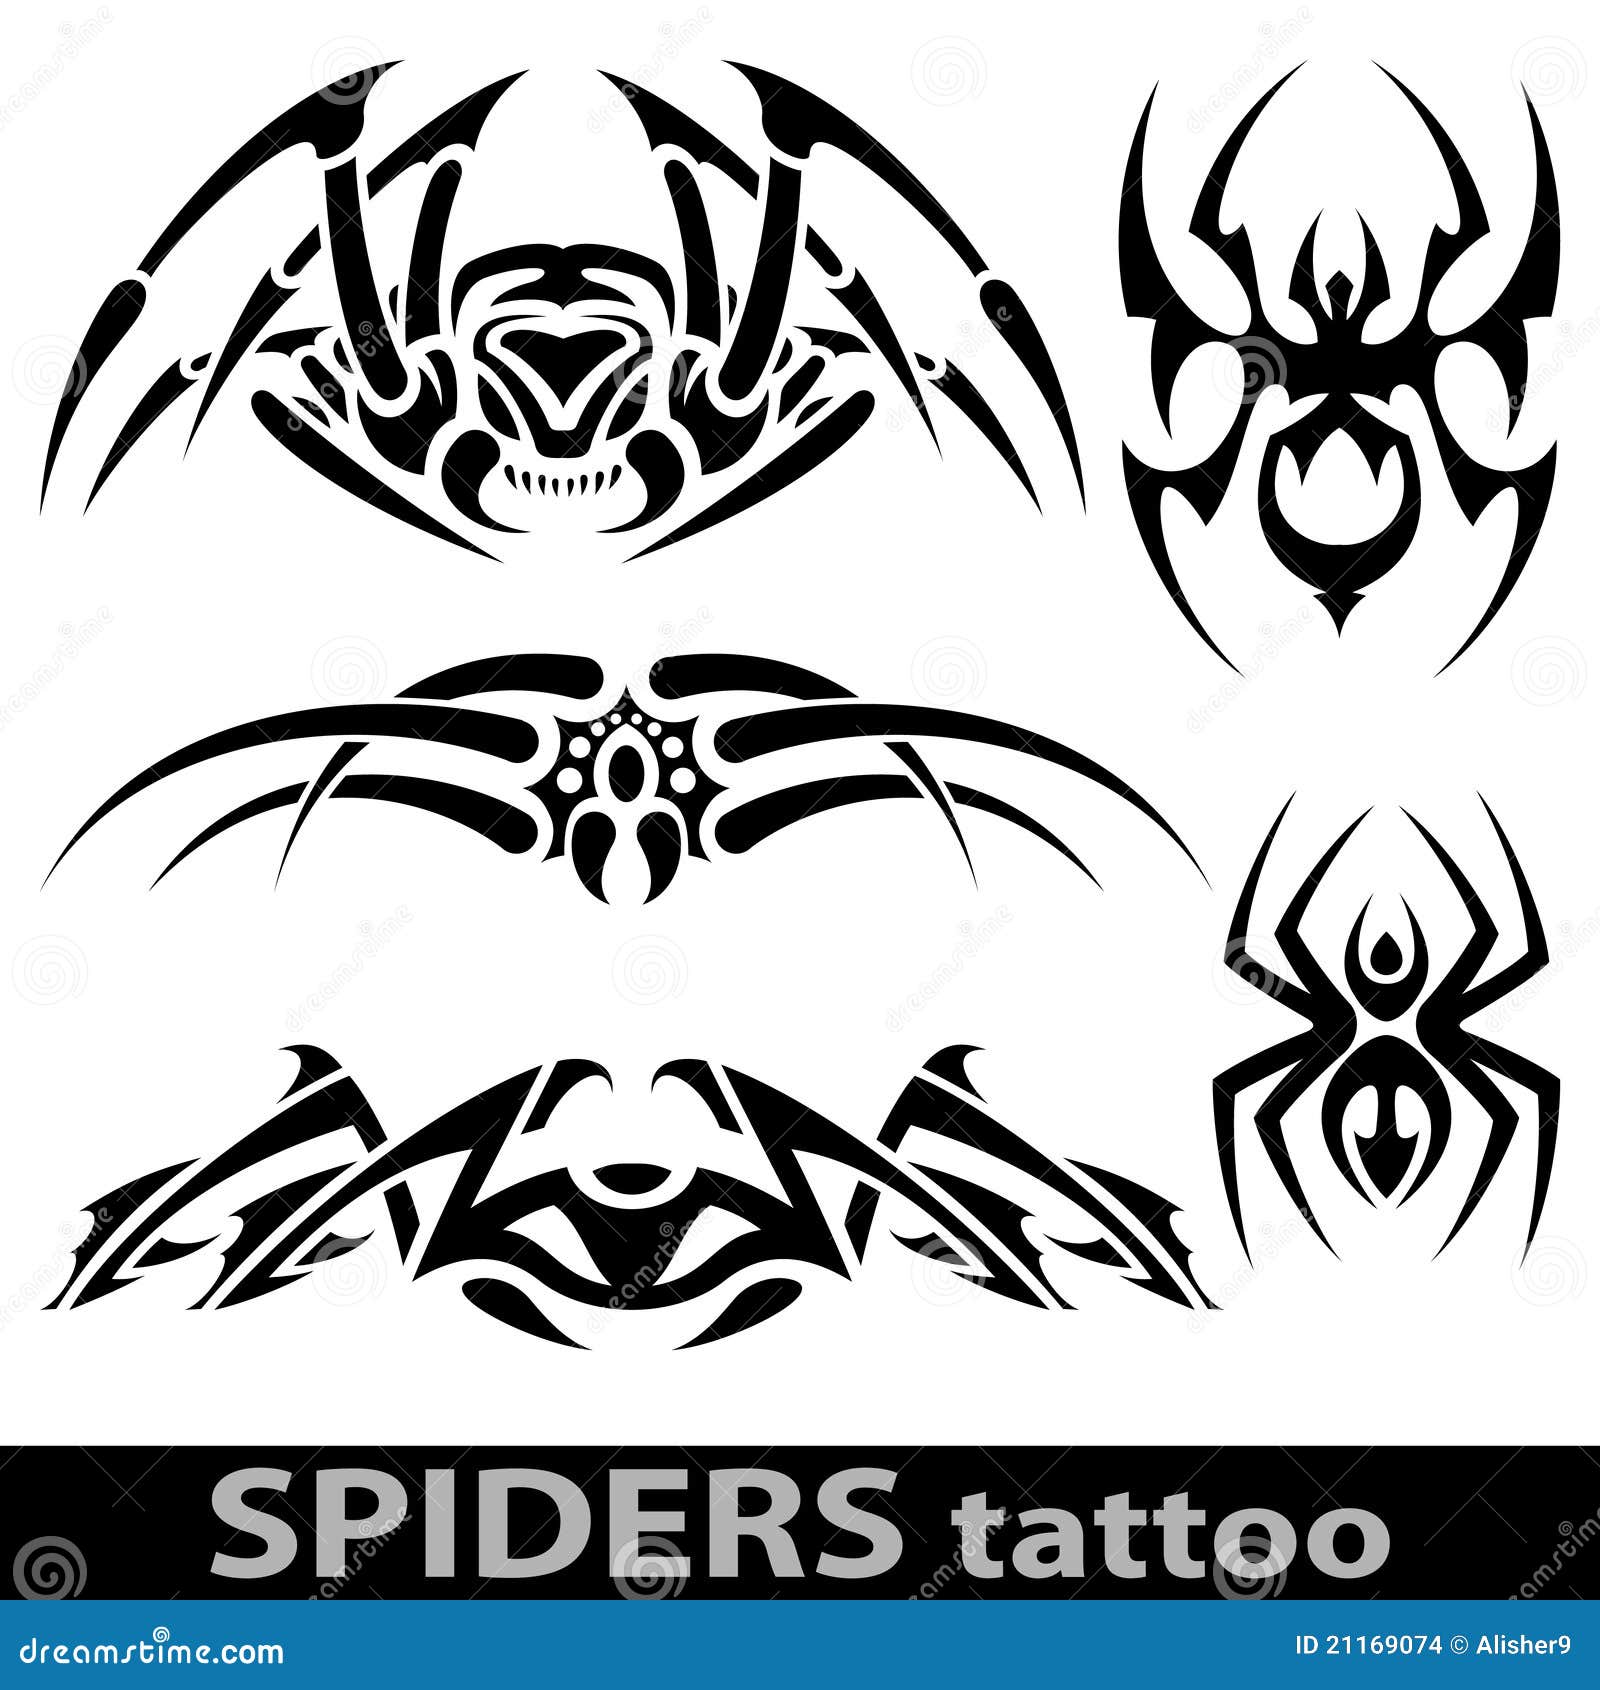 20 legs spider tattoo by HerseySef on DeviantArt